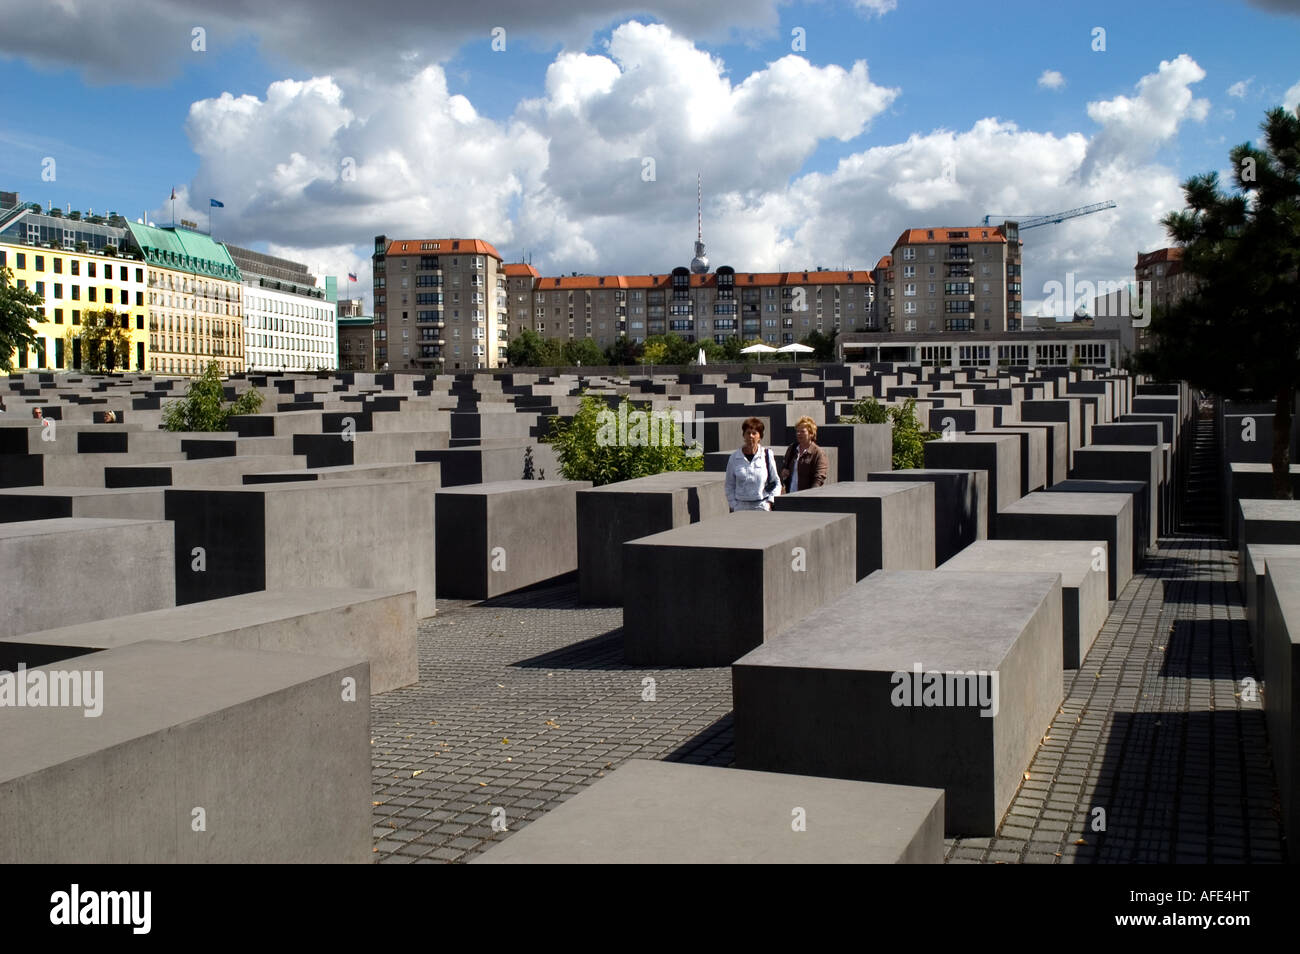 Jüdische Holocaust Memoria abstrakte Sicht von rechteckigen grauen Steinen Denkmal entworfen Eberstrasse vom Architekten Peter Eisenman Berlin Deutschland Stockfoto